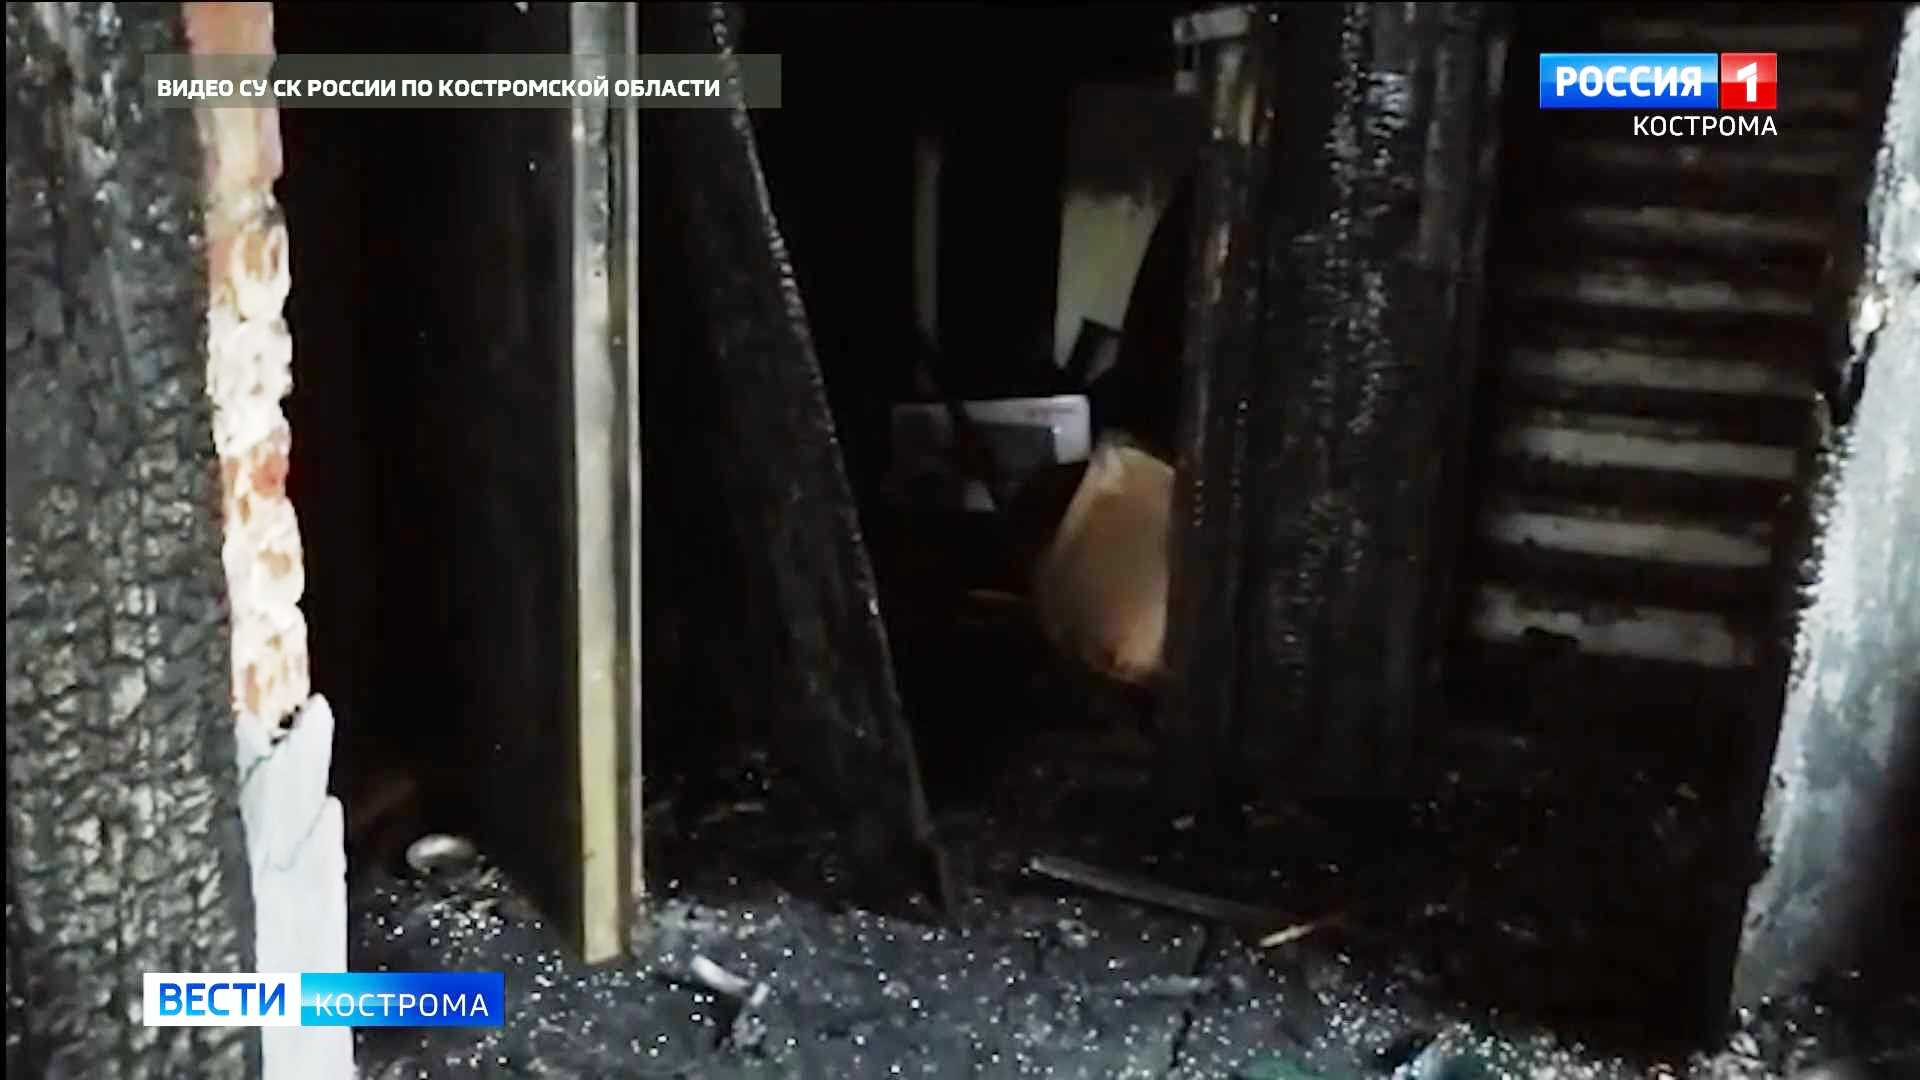 Следователи озвучили возможные причины смертельного пожара в Кологриве